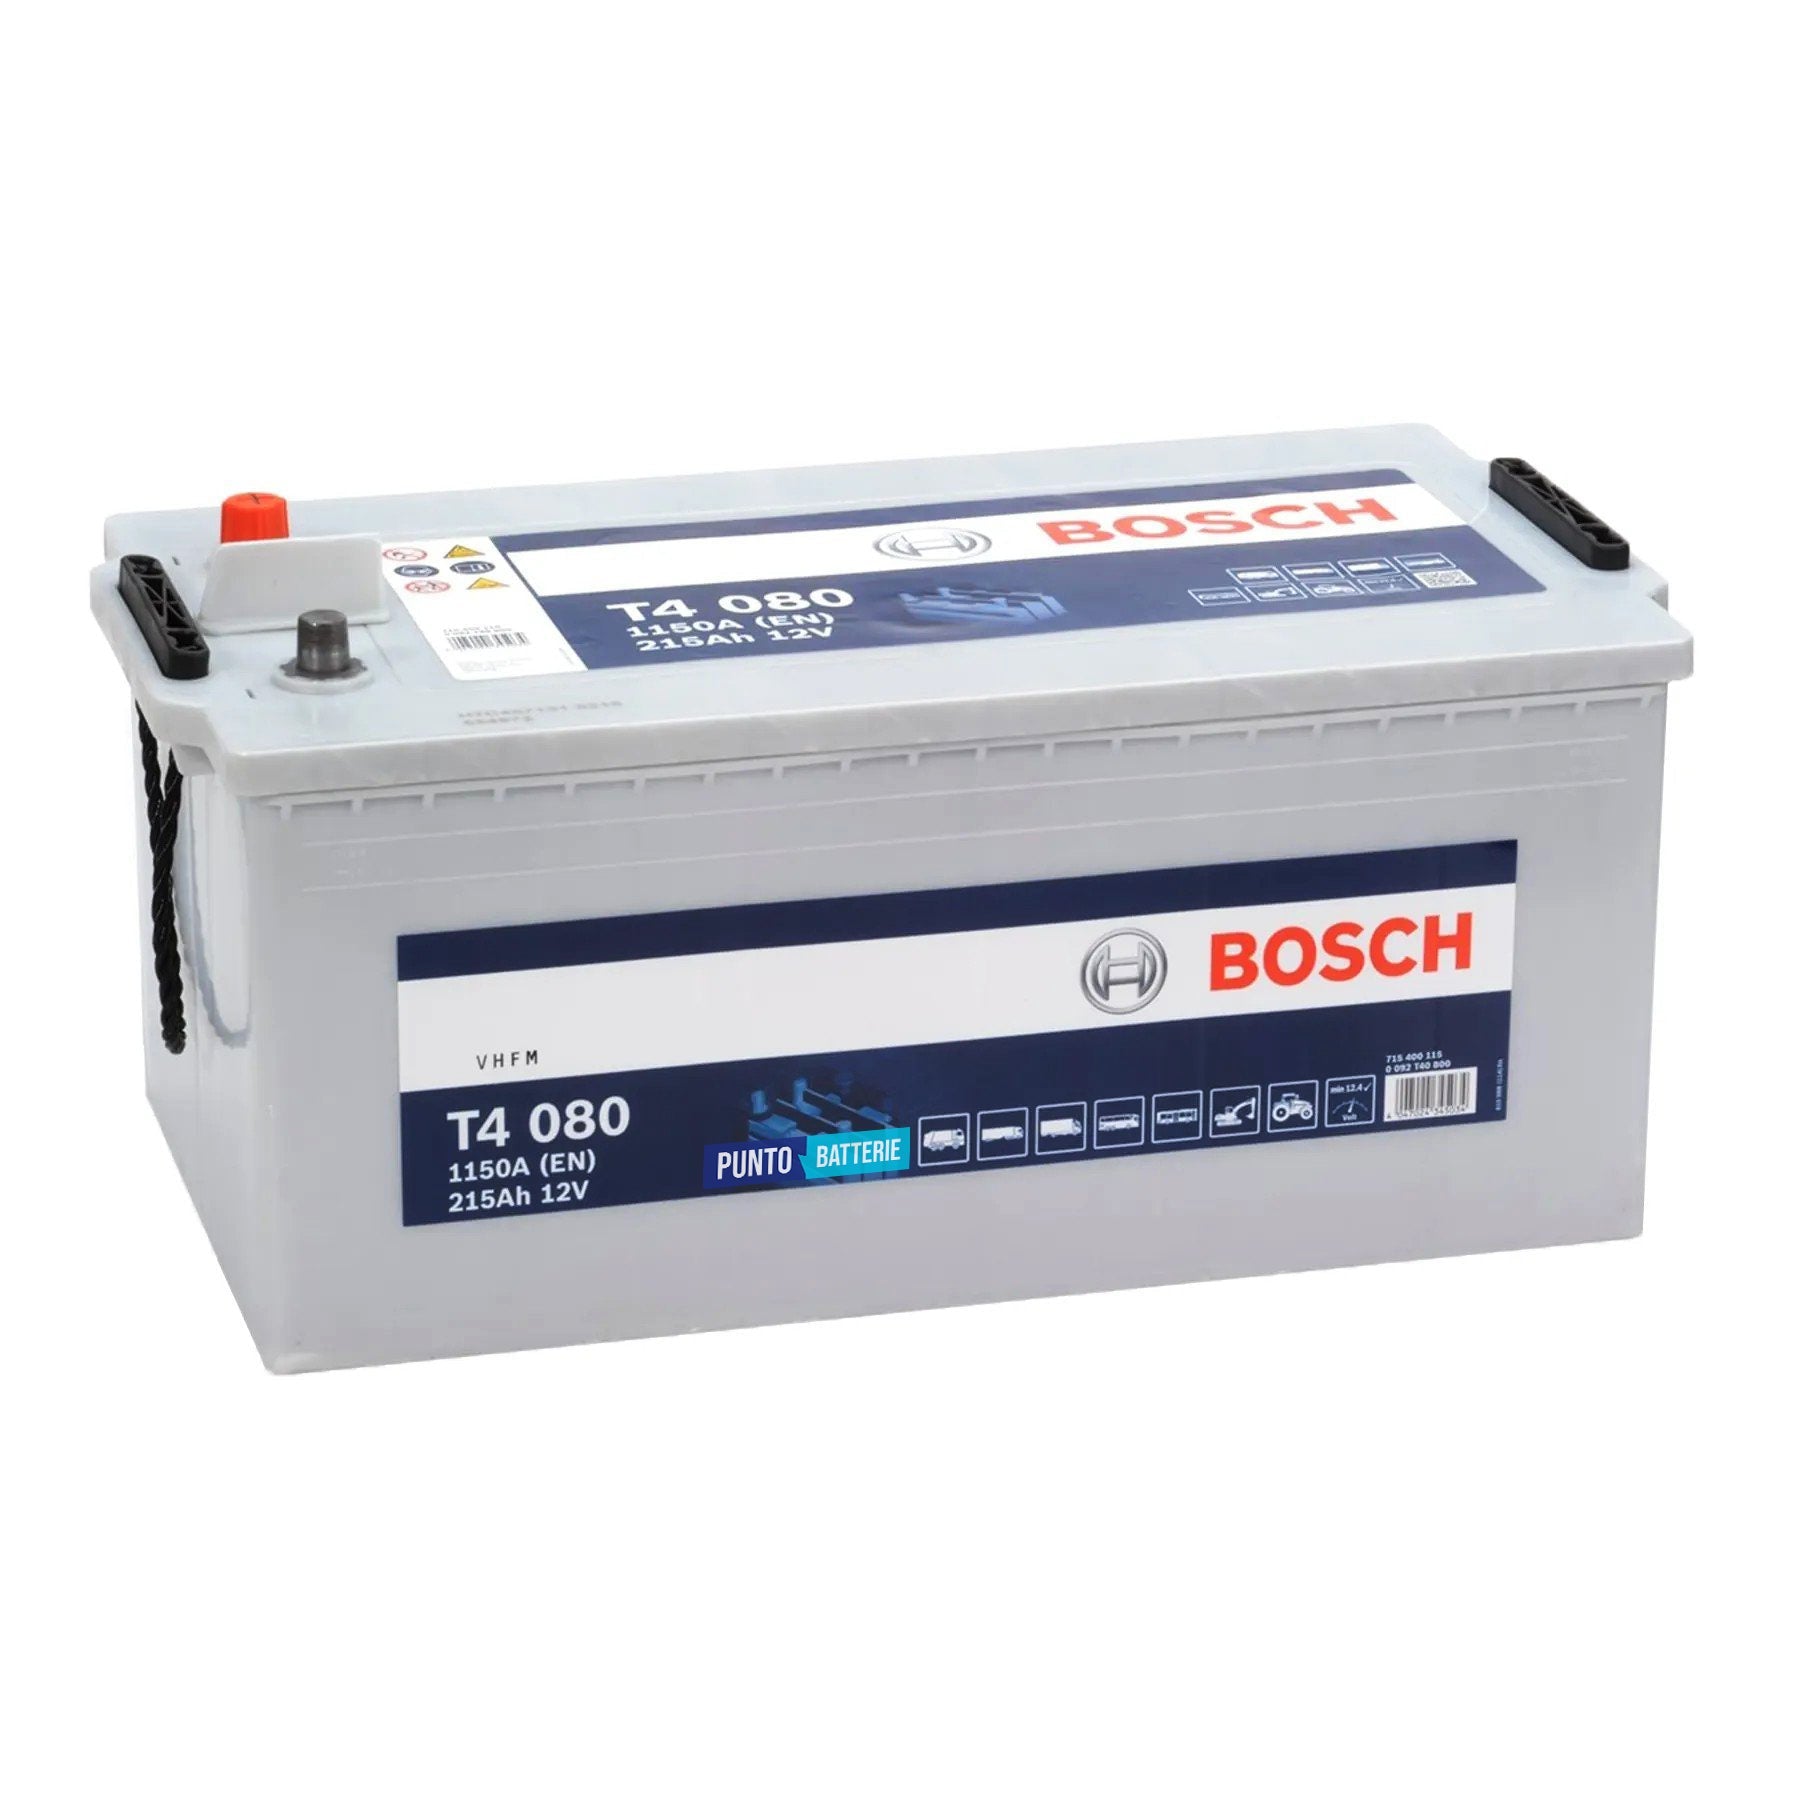 Batteria originale Bosch T4 T4080, dimensioni 518 x 276 x 242, polo positivo a sinistra, 12 volt, 215 amperora, 1150 ampere. Batteria per camion e veicoli pesanti.